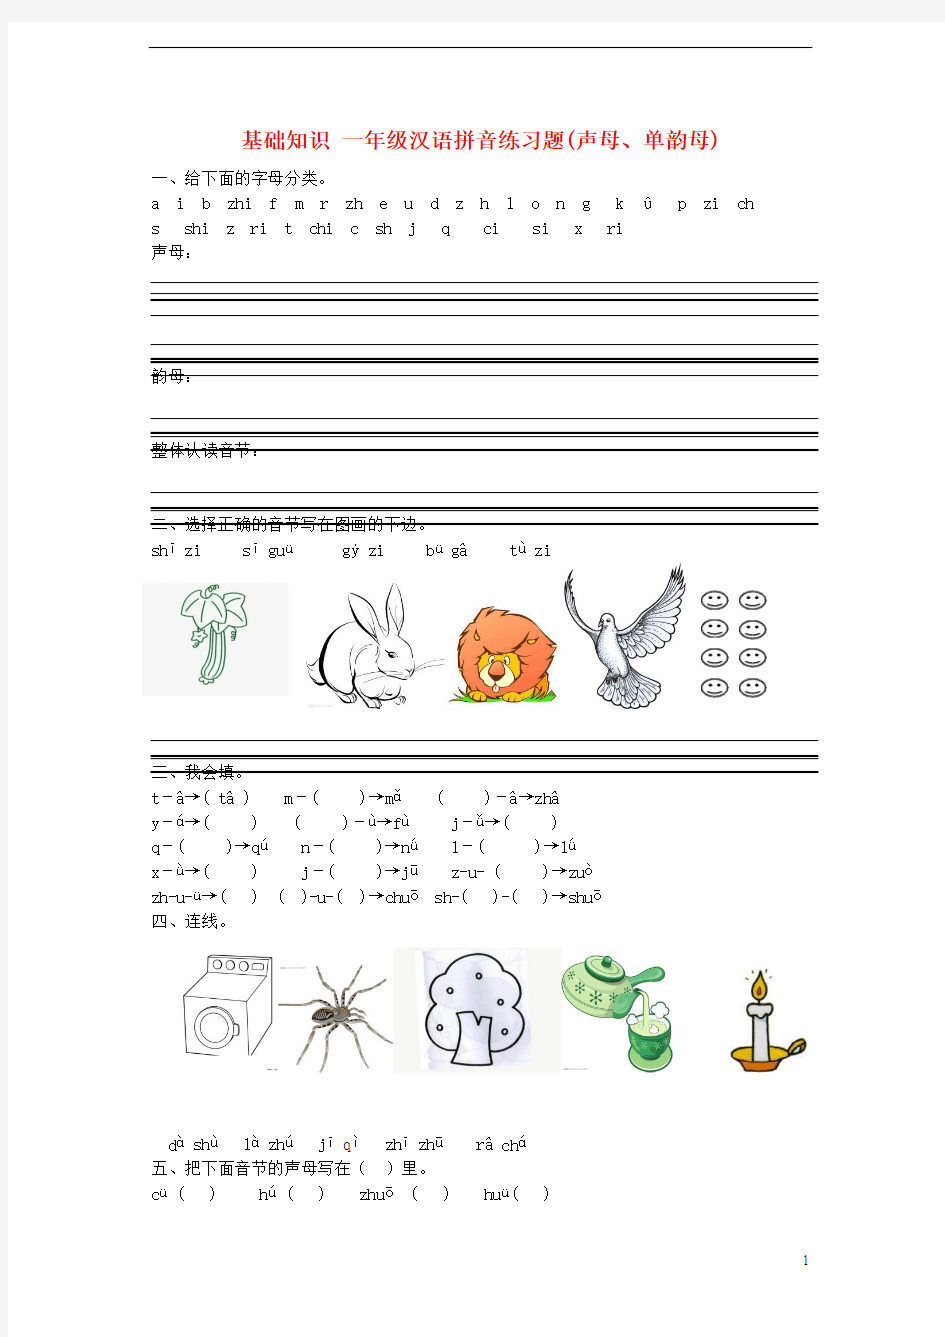 2014小升初语文知识点专项复习 专题一 基础知识 (一年级)汉语拼音练习题(声母、单韵母)